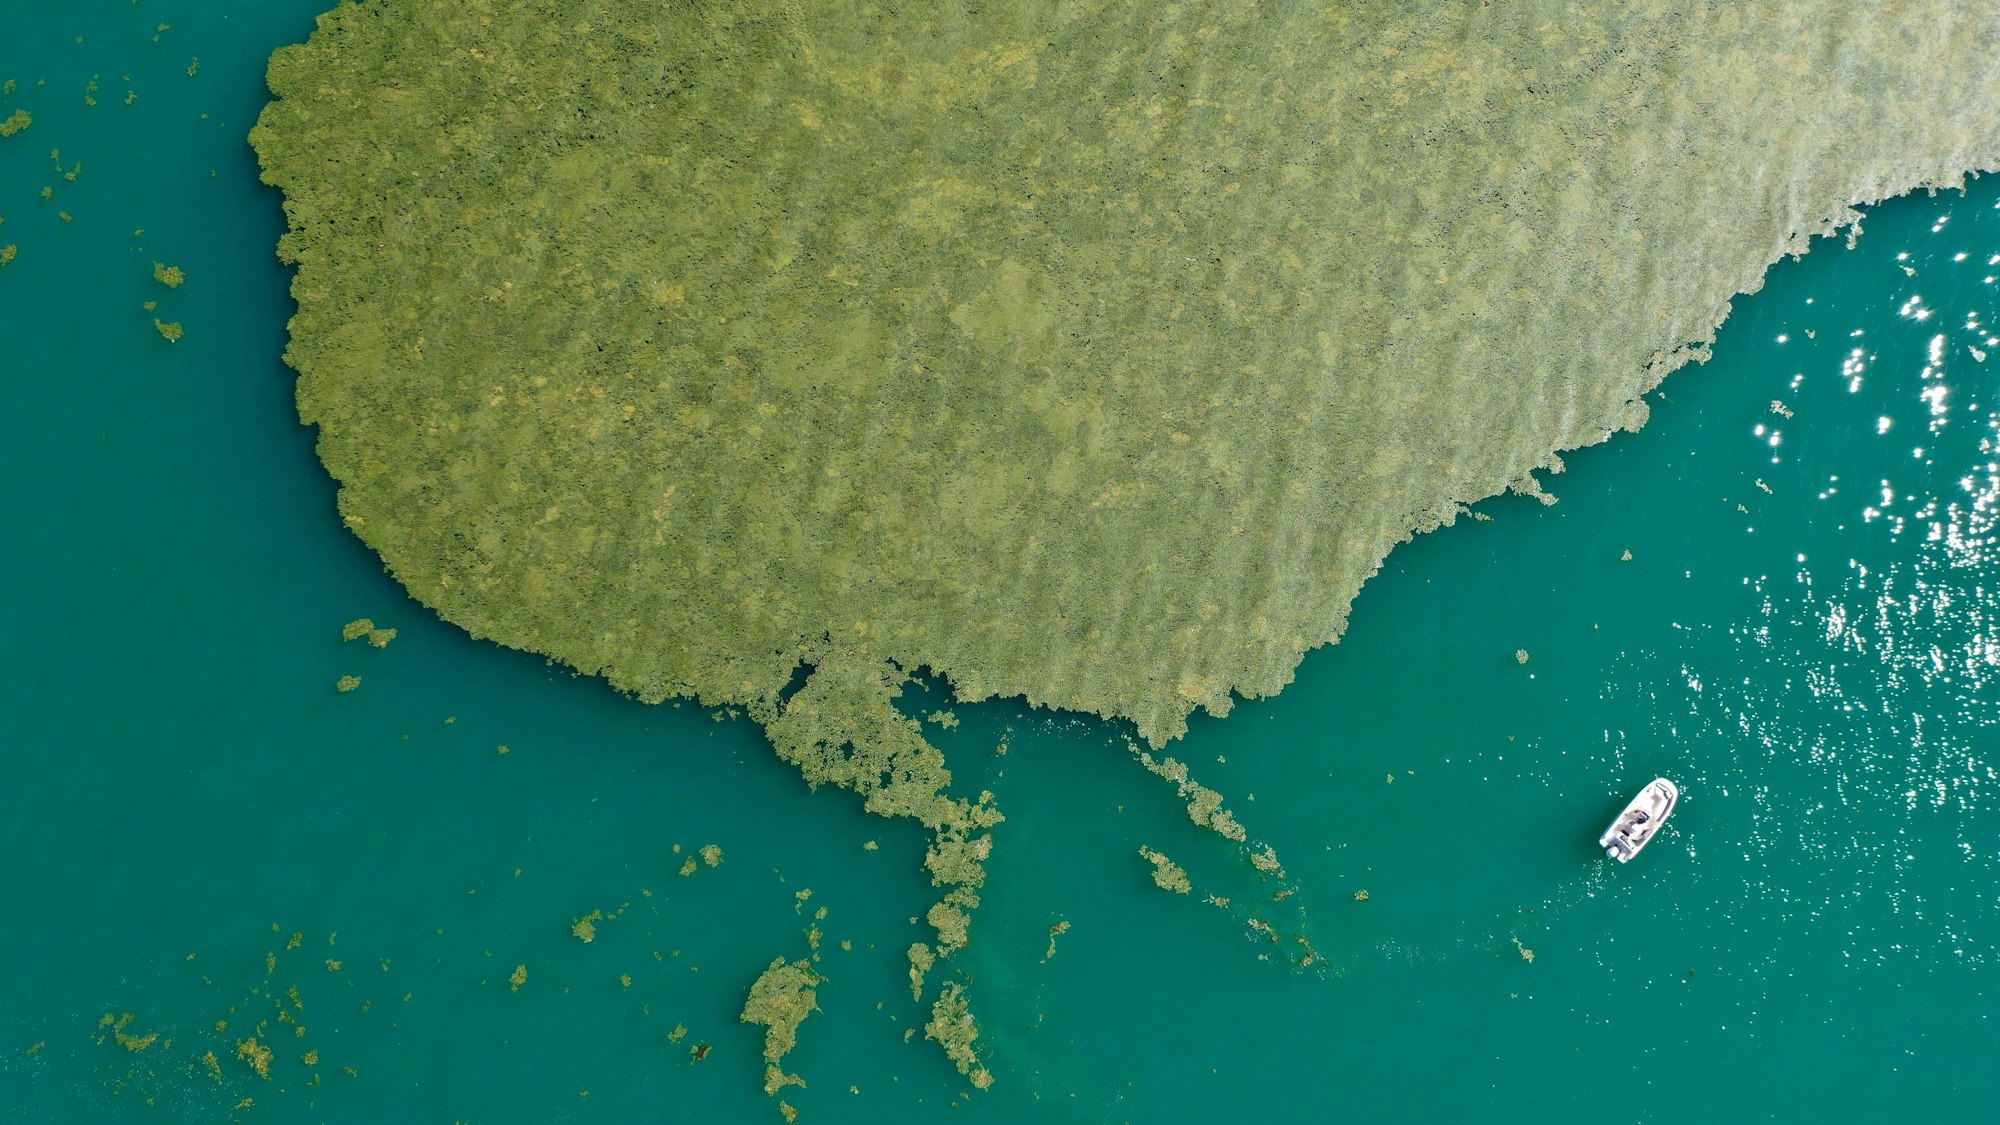 Ein großer Teppich voller Algen schwimmt auf dem Meer. Eine kleine Yacht ist ebenfalls zu sehen.